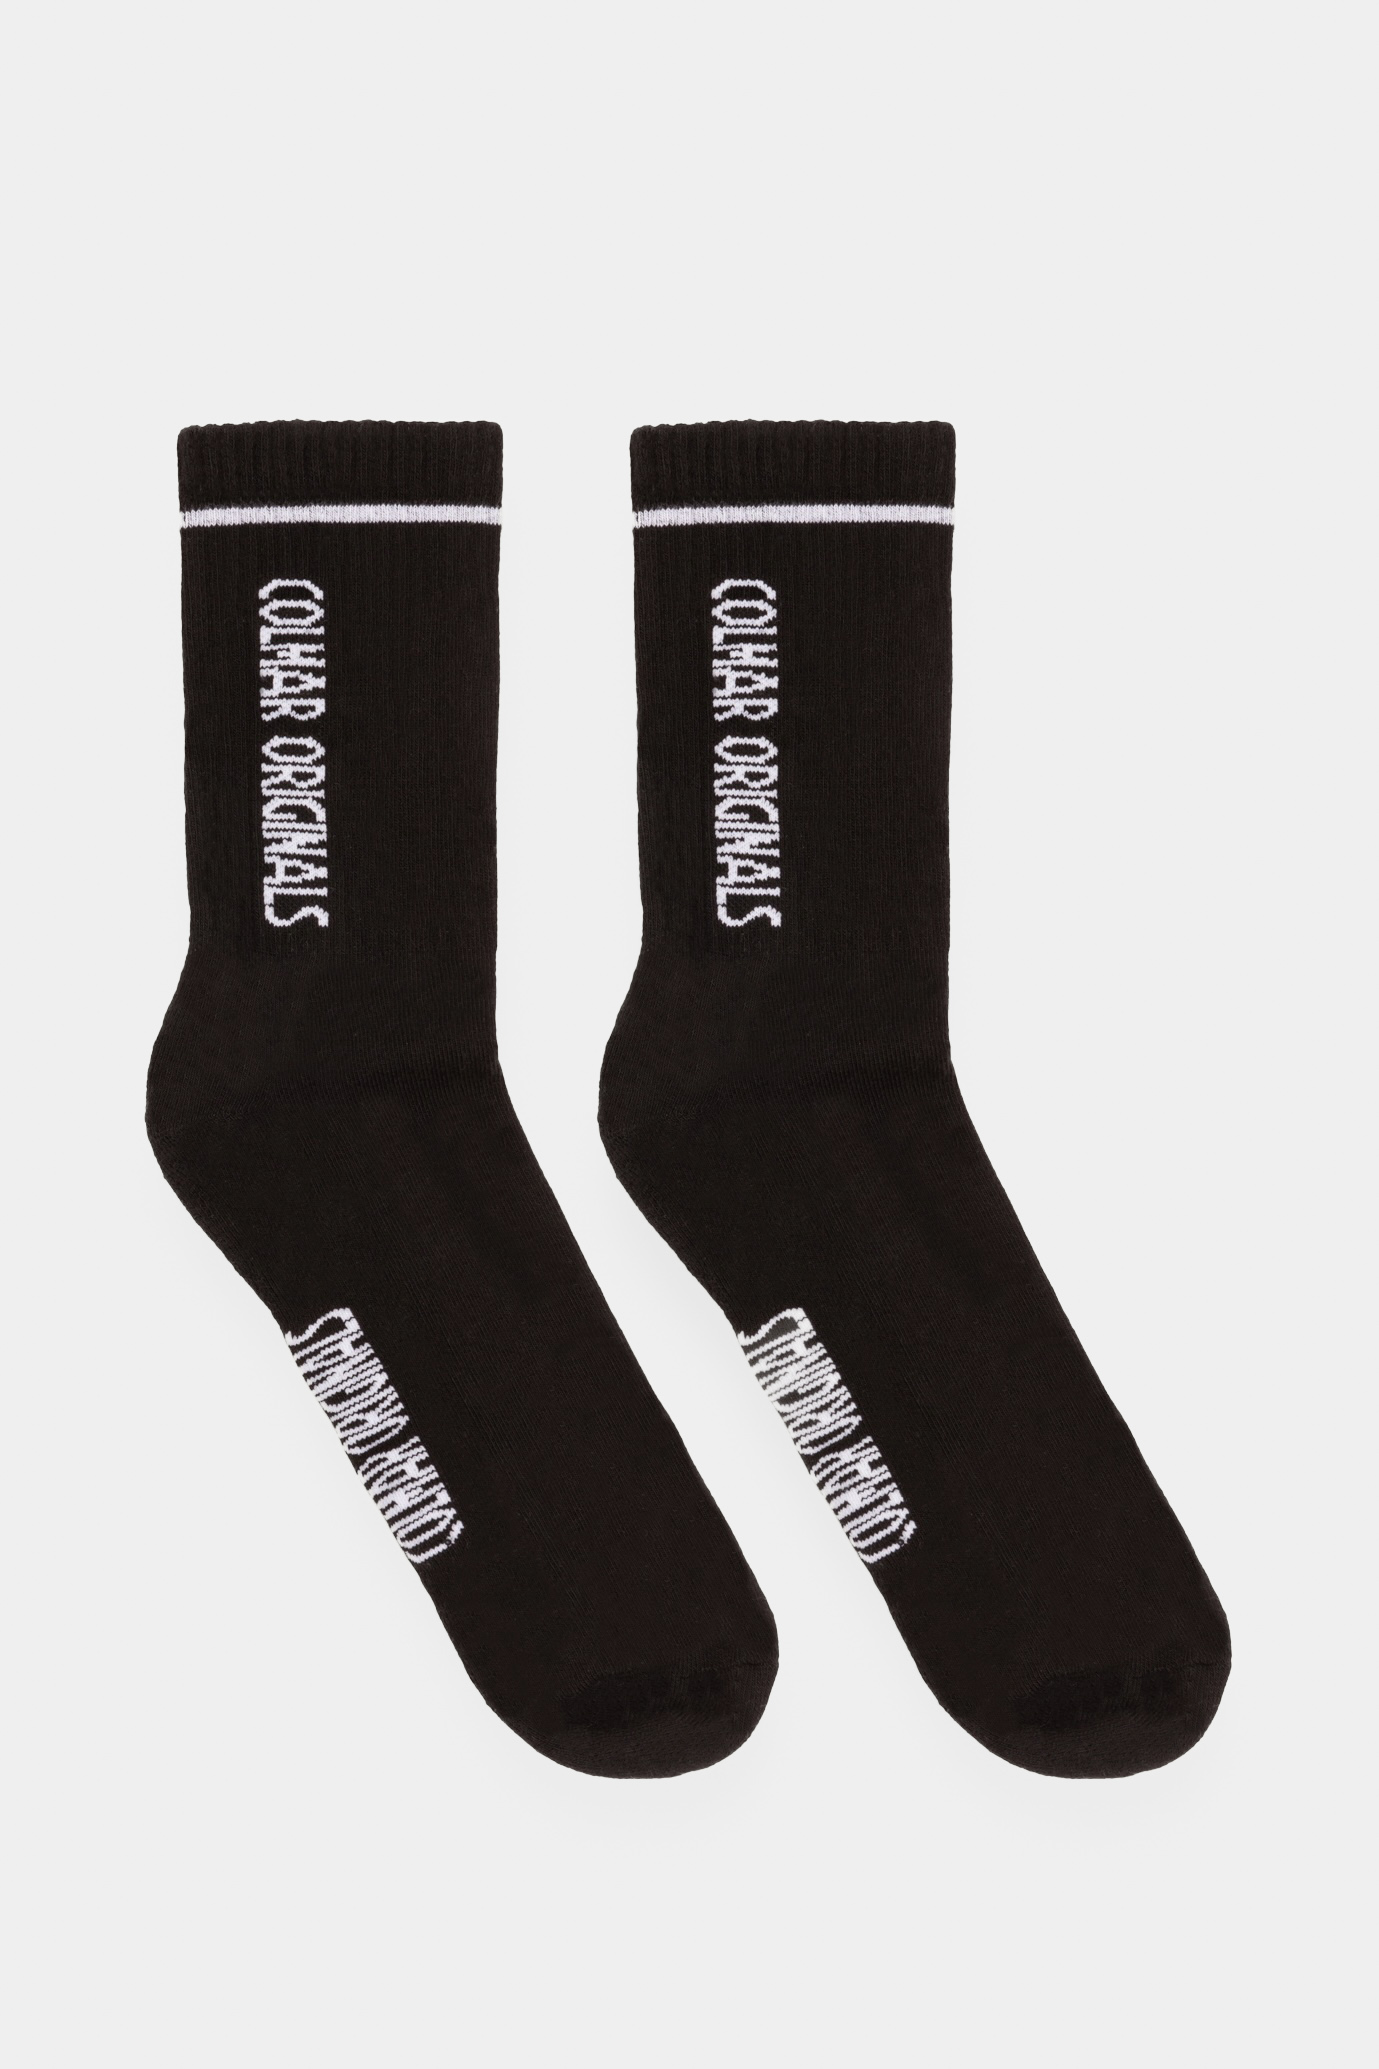 Чорні шкарпетки Colmar 